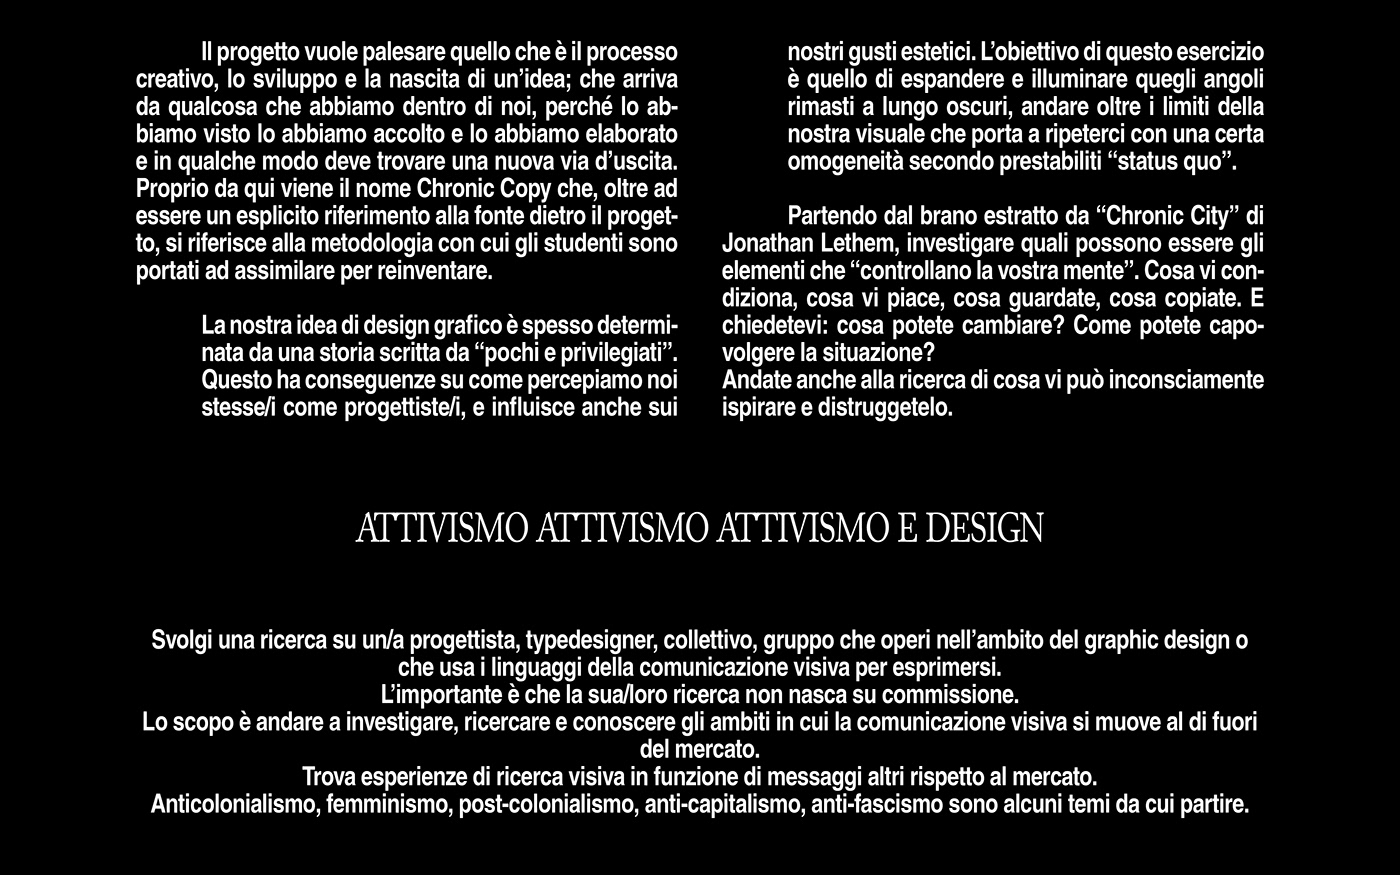 design Graphic Designer publication publishing   InDesign Layout editorial design  attivism